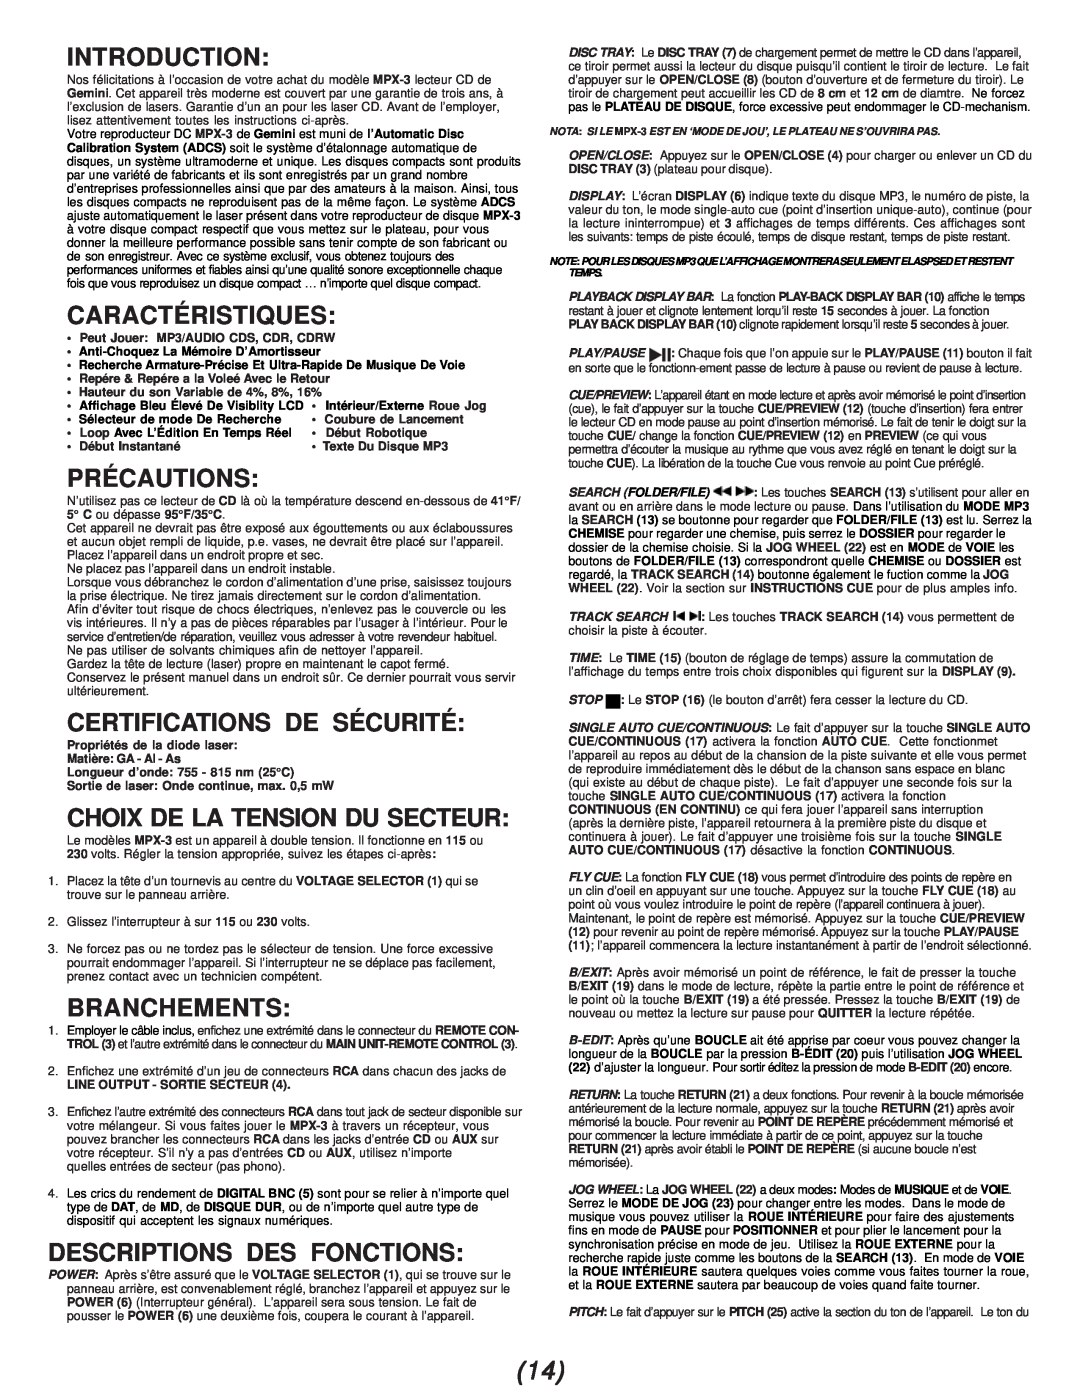 Gemini MPX-3 manual Caractéristiques, Précautions, Certifications De Sécurité, Choix De La Tension Du Secteur, Branchements 